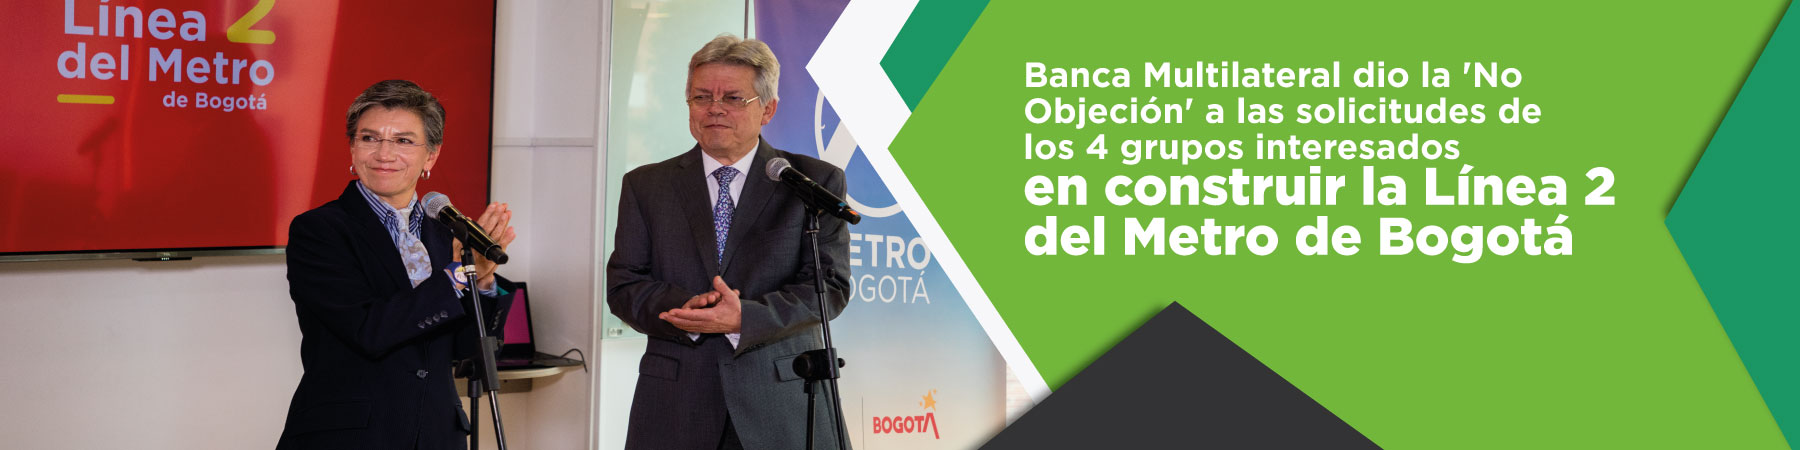 Banca Multilateral dio la 'No Objeción' a las solicitudes de los 4 grupos interesados en construir la Línea 2 del Metro de Bogotá.